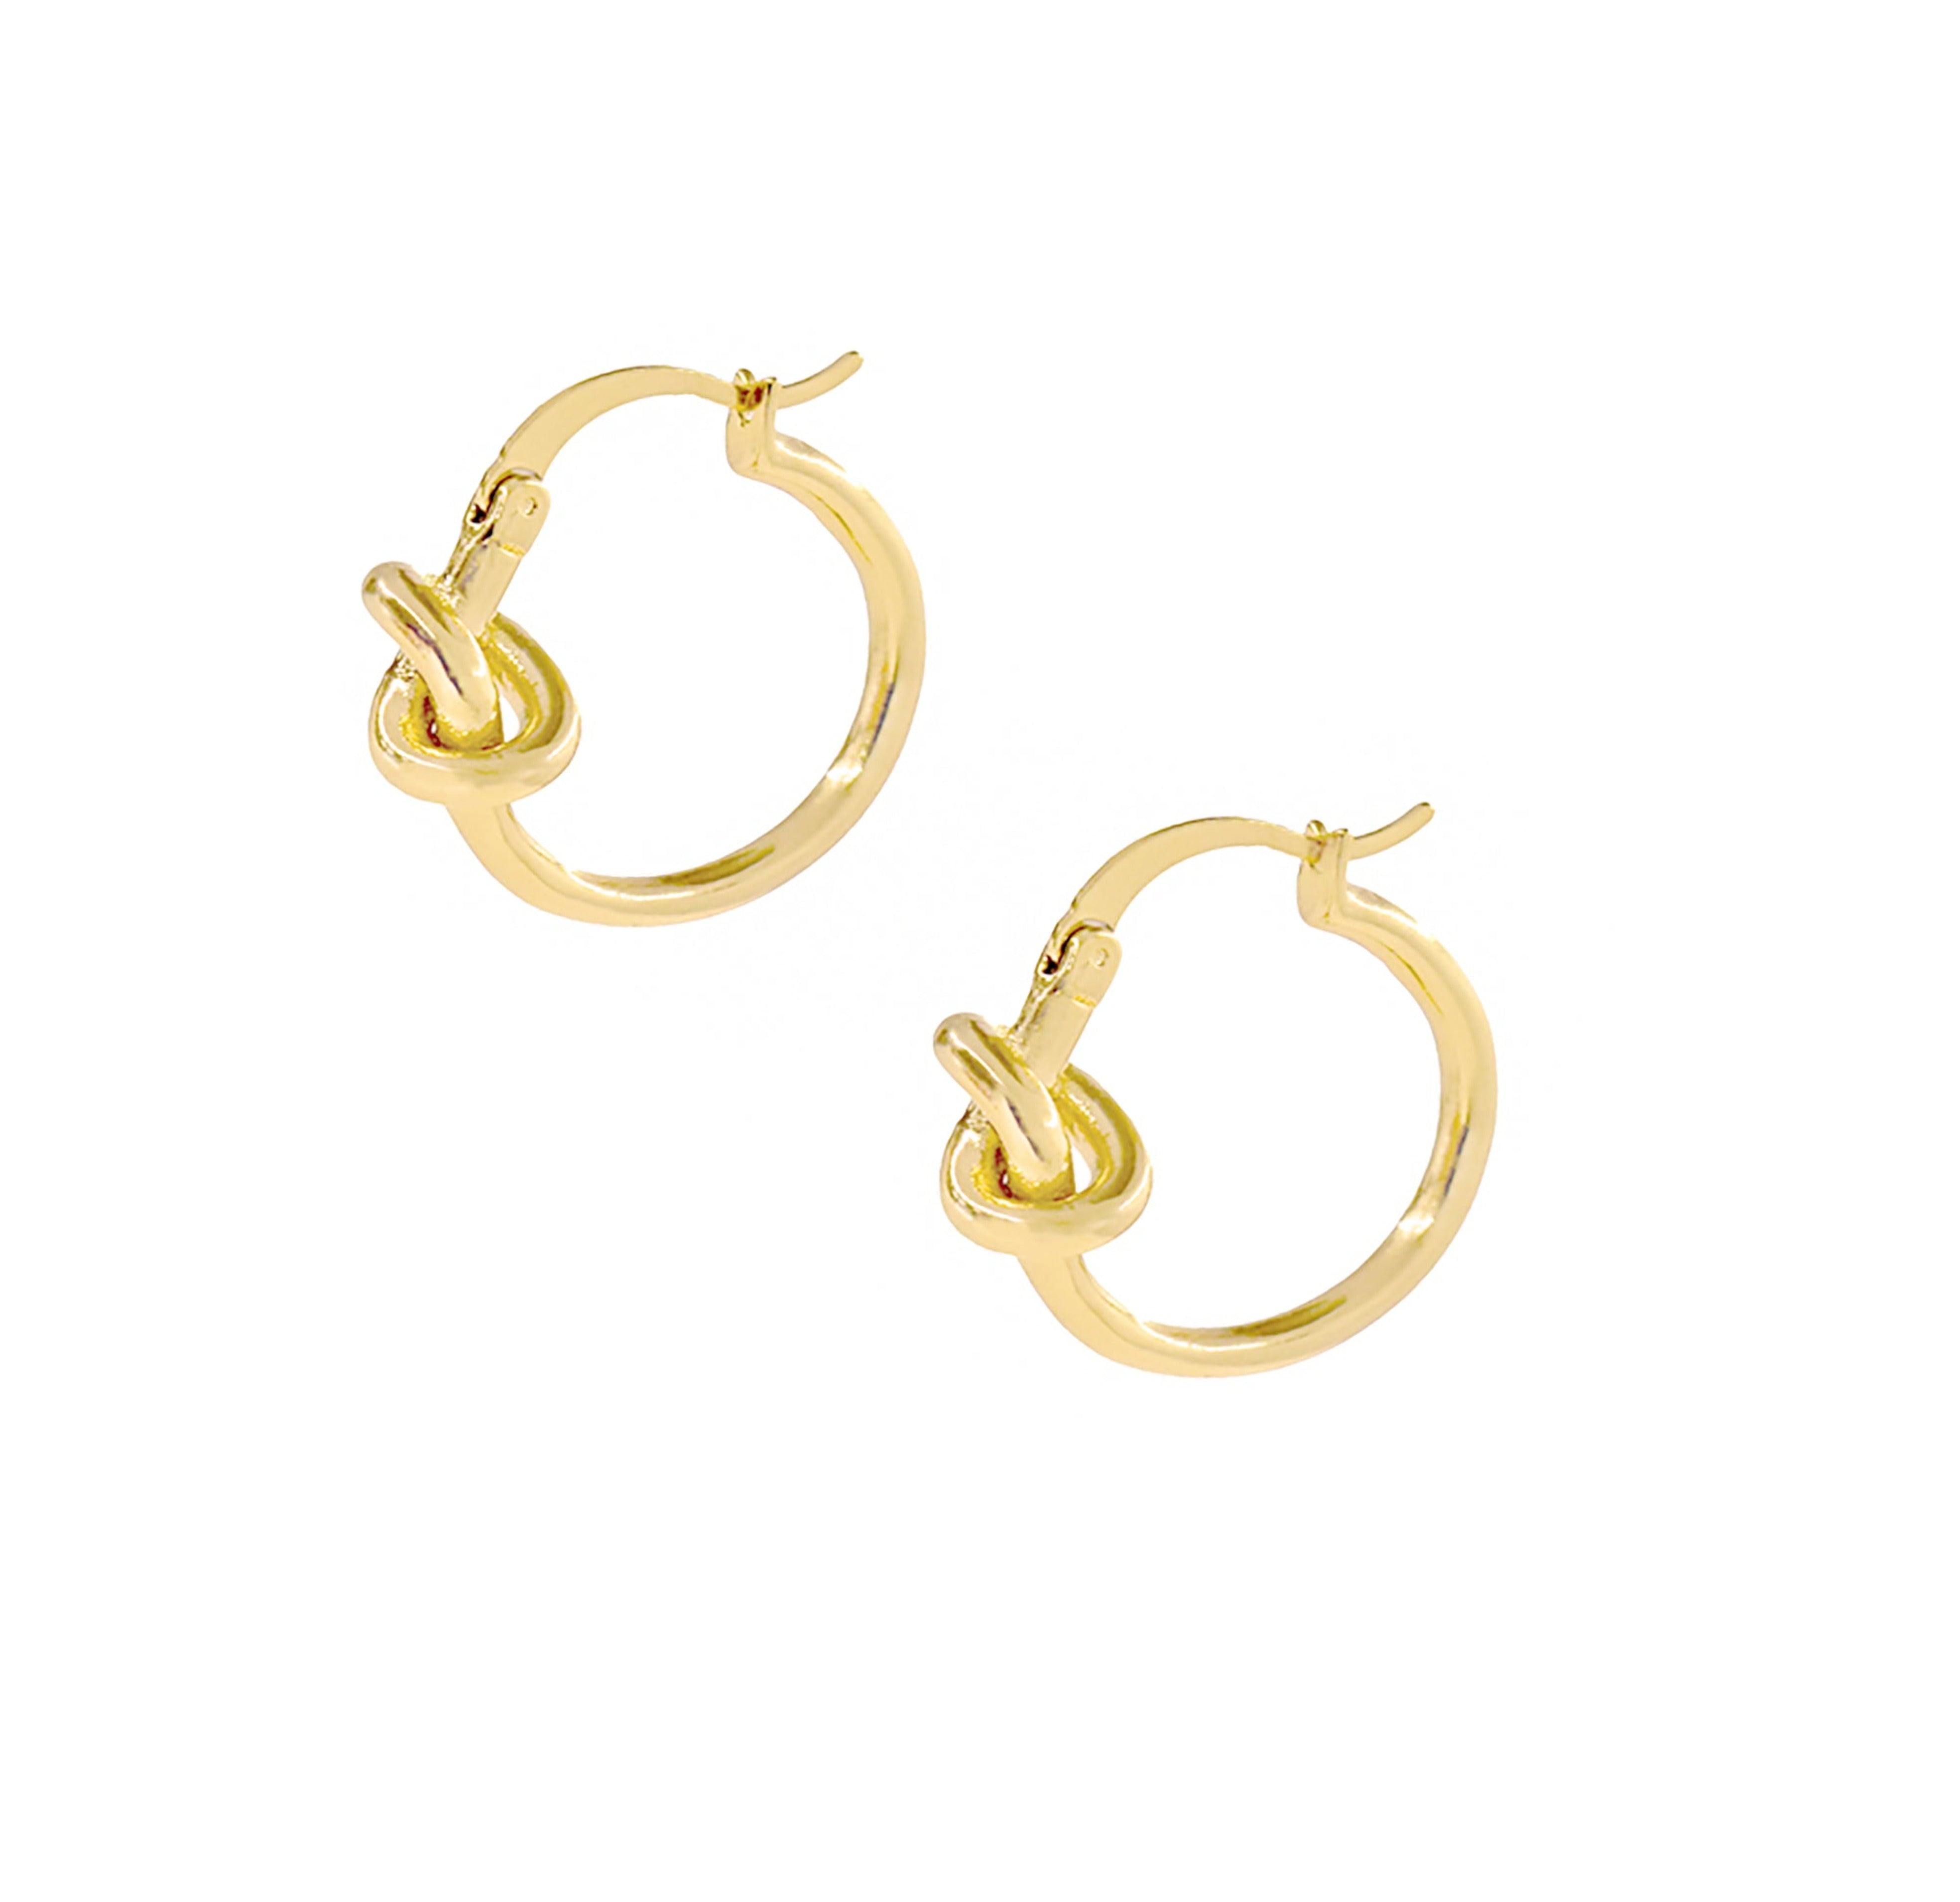 gold knot hoop earrings waterproof jewelry